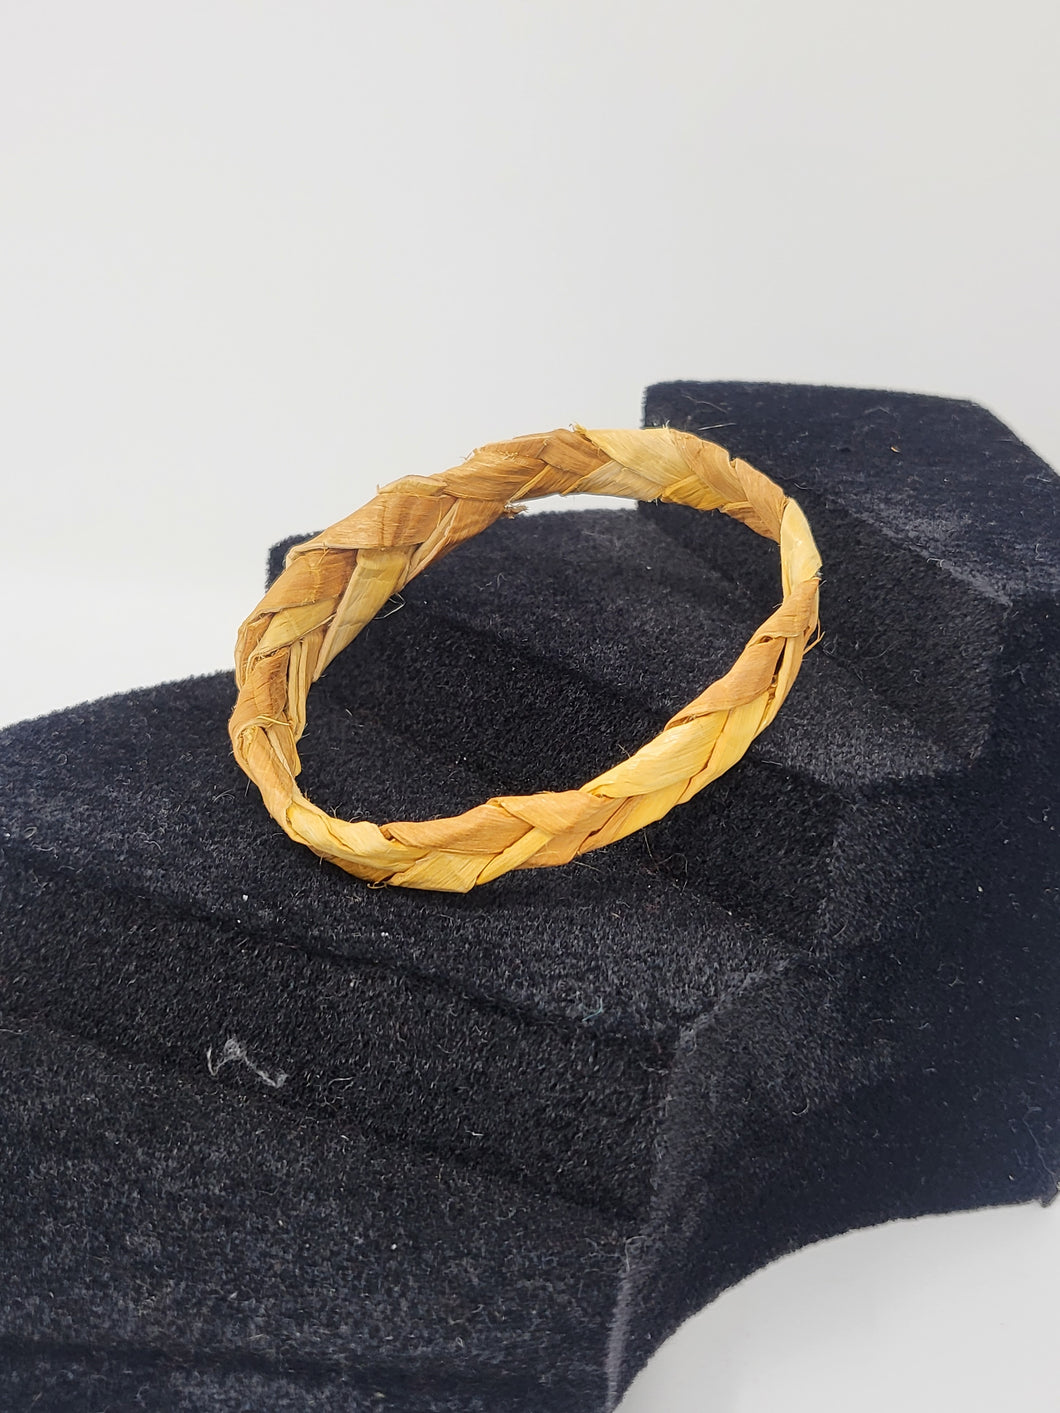 Cedar bracelets by Jennifer Glendale